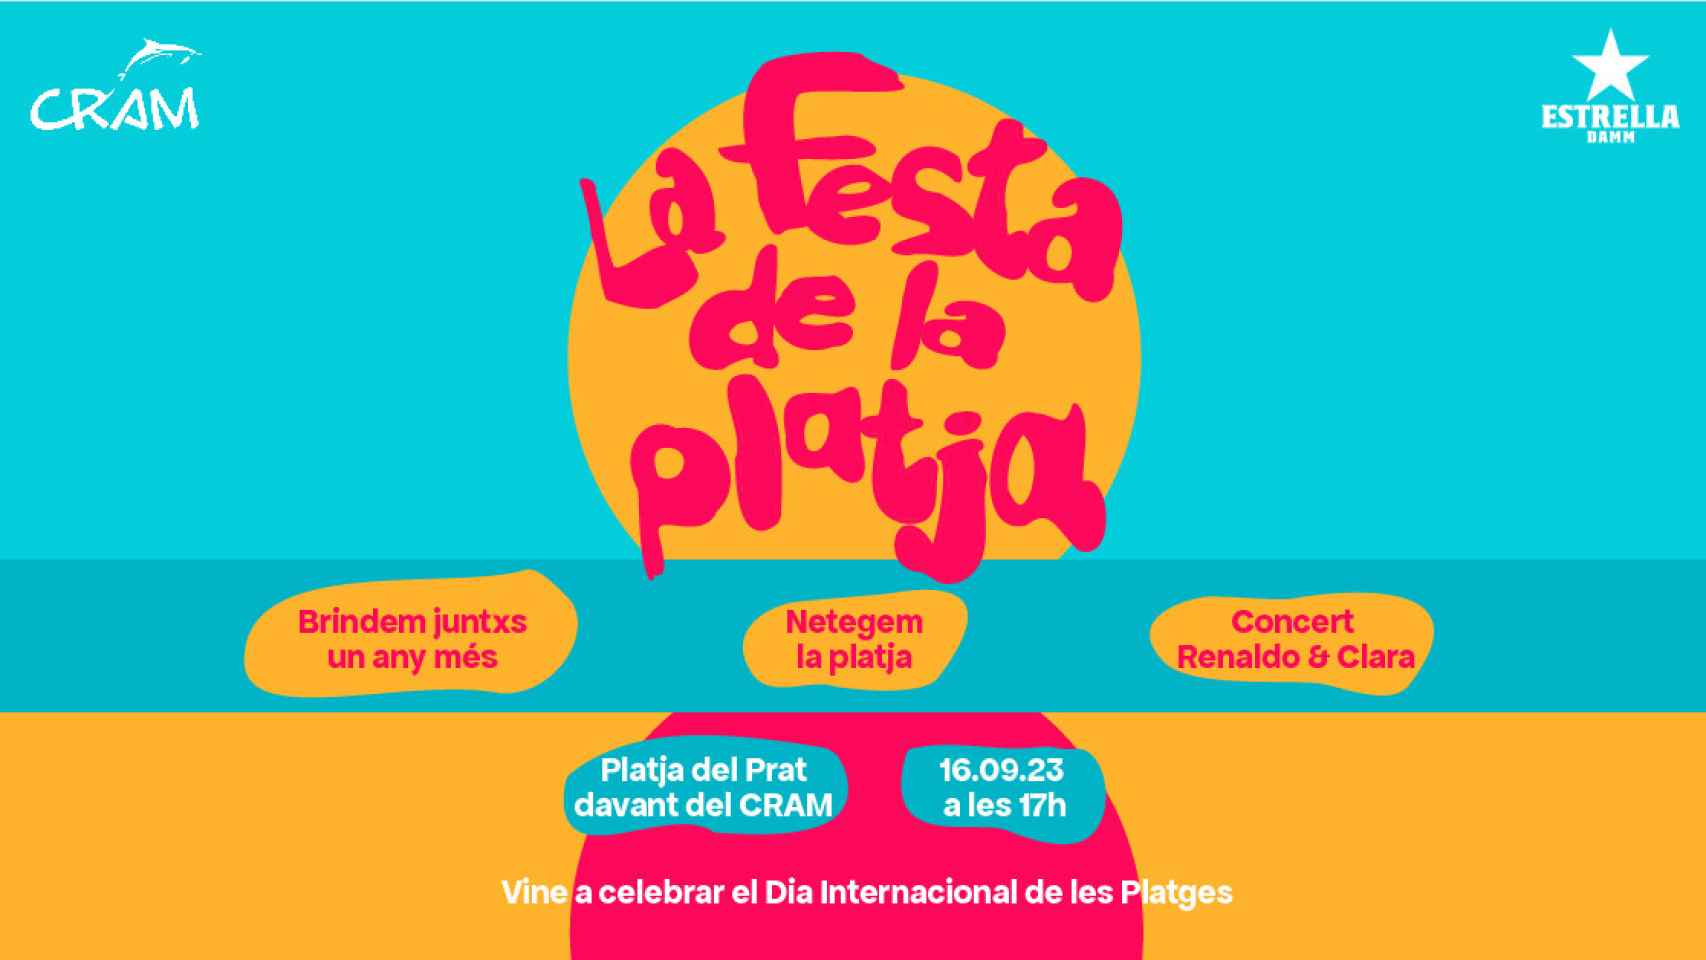 Cartel de la 'Festa de la Platja' organizada por Estrella Damm y la Fundación CRAM